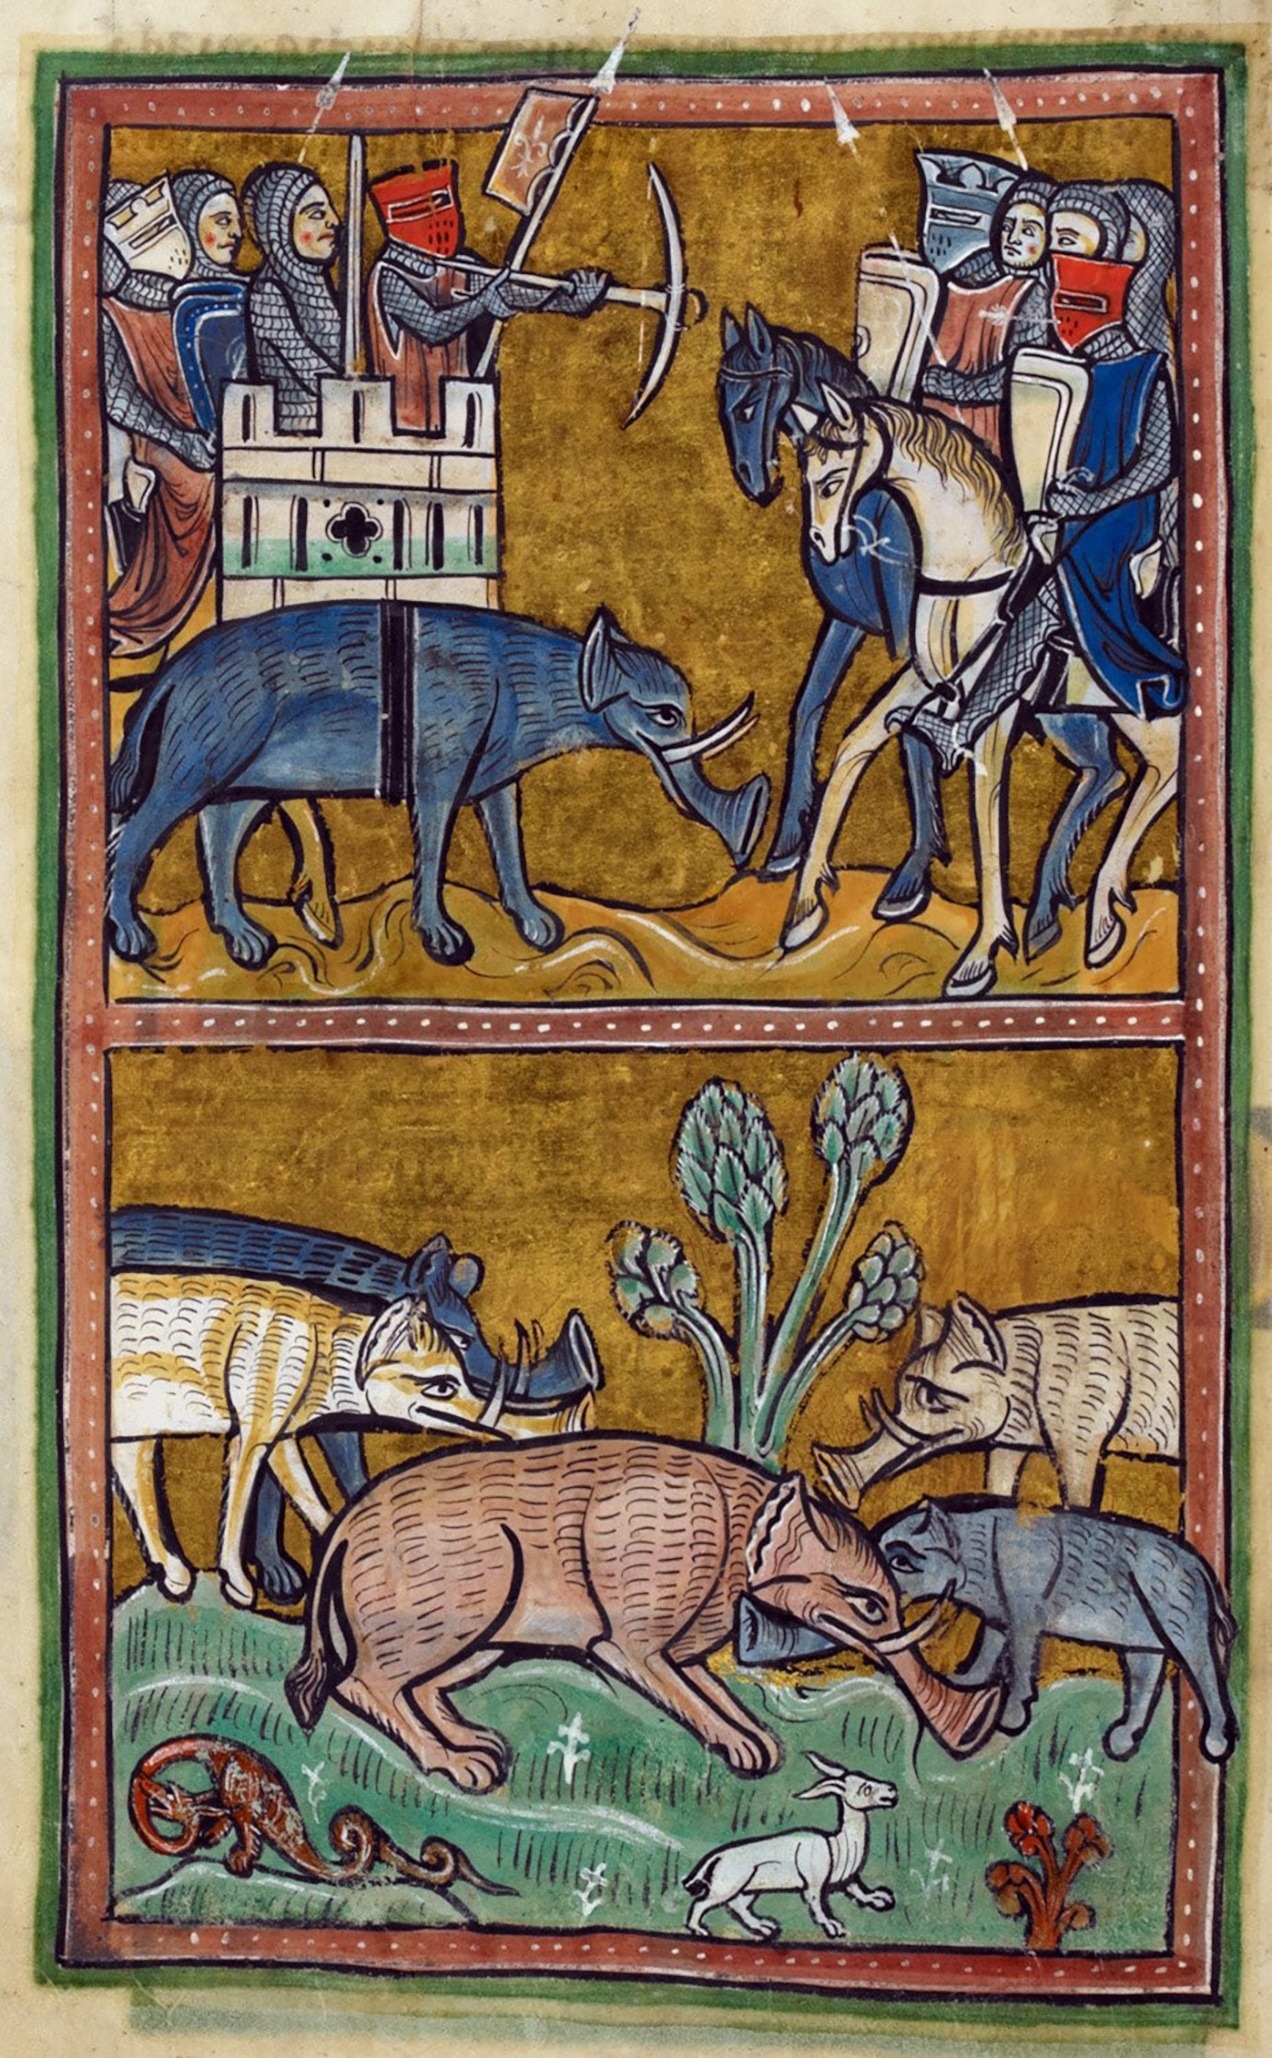 戰象背上的武士擊退騎馬的敵人，而下方畫面中則是其他長著特殊喇叭狀長鼻的大象在作戰，這幅插畫出自公元1250年前後繪於倫敦的《羅切斯特動物寓言集》（Rochester Bestiary）。中世紀歐洲的藝術家，很少有人親眼見過真正的大象，也因此畫出了五花八門的巨大動物，至今仍然令人為之讚嘆。 IMAGE VIA THE BRITISH LIBRARY 